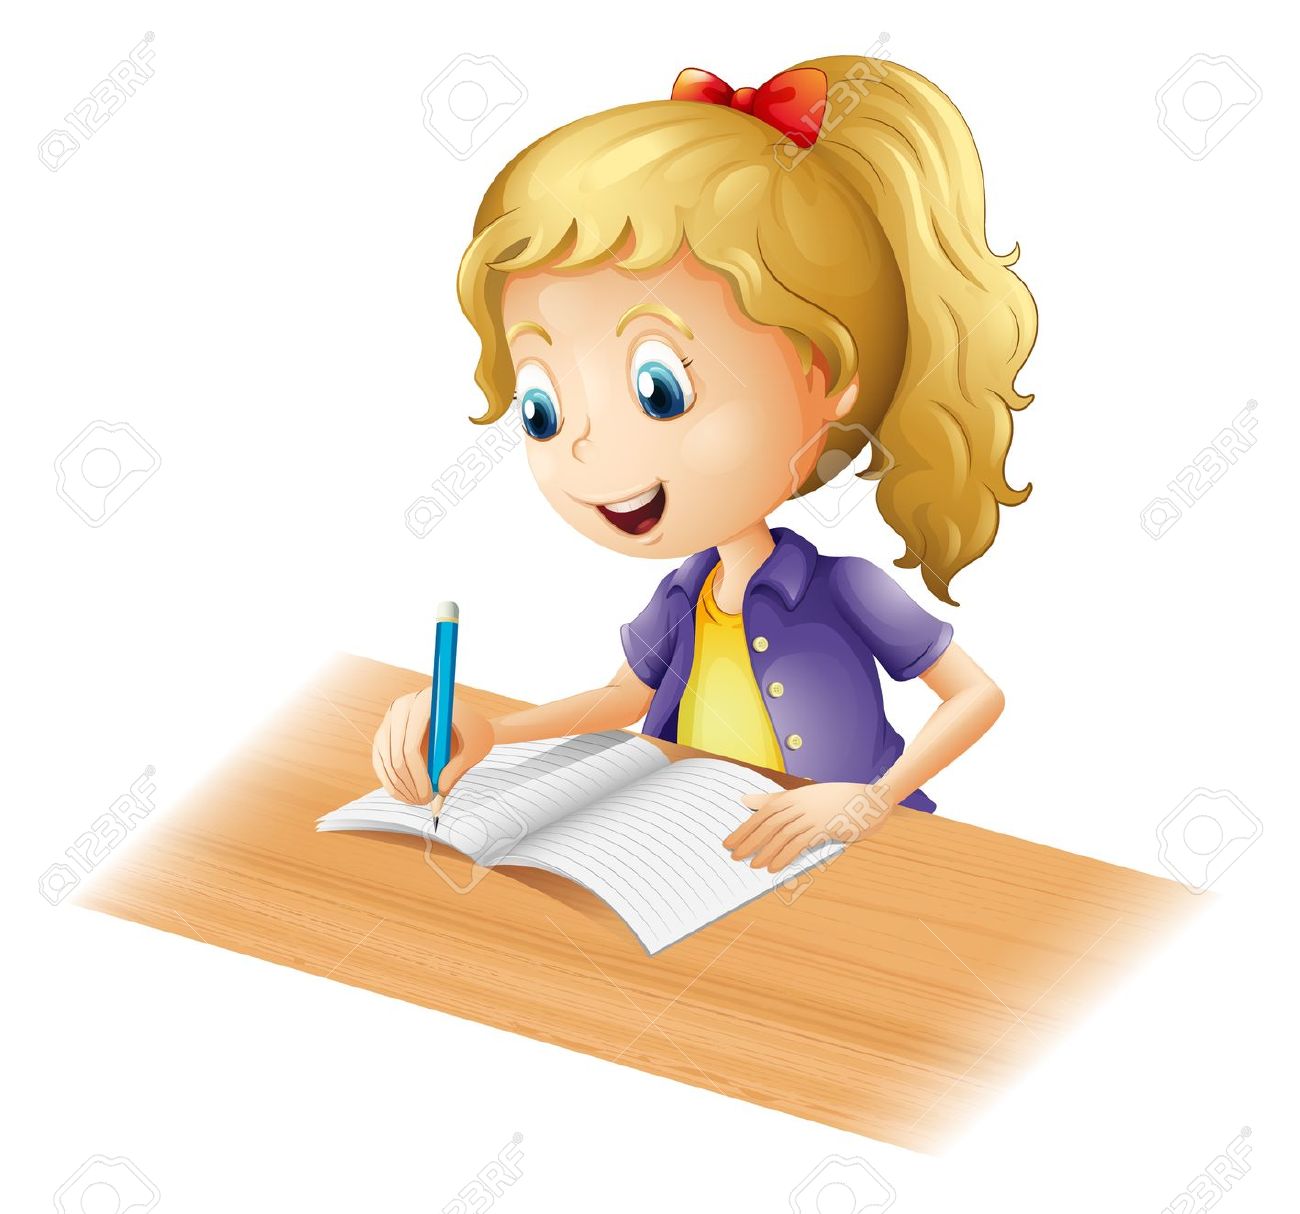 clipart girl doing homework - photo #1